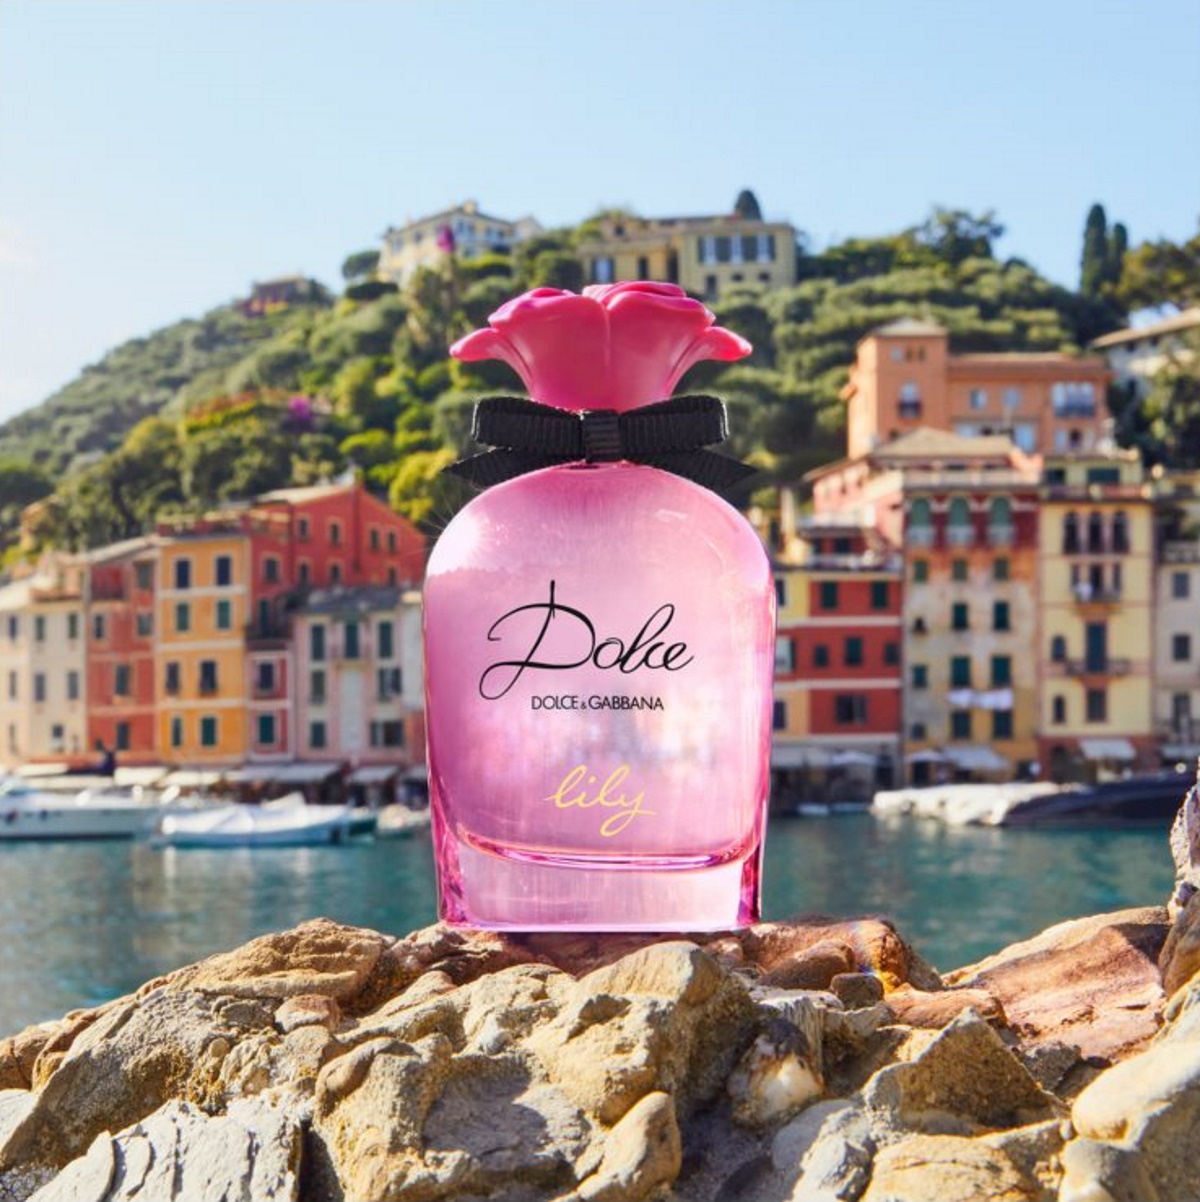 Dolce & Gabbana - Dolce Lily le nouveau parfum printemps été 2022